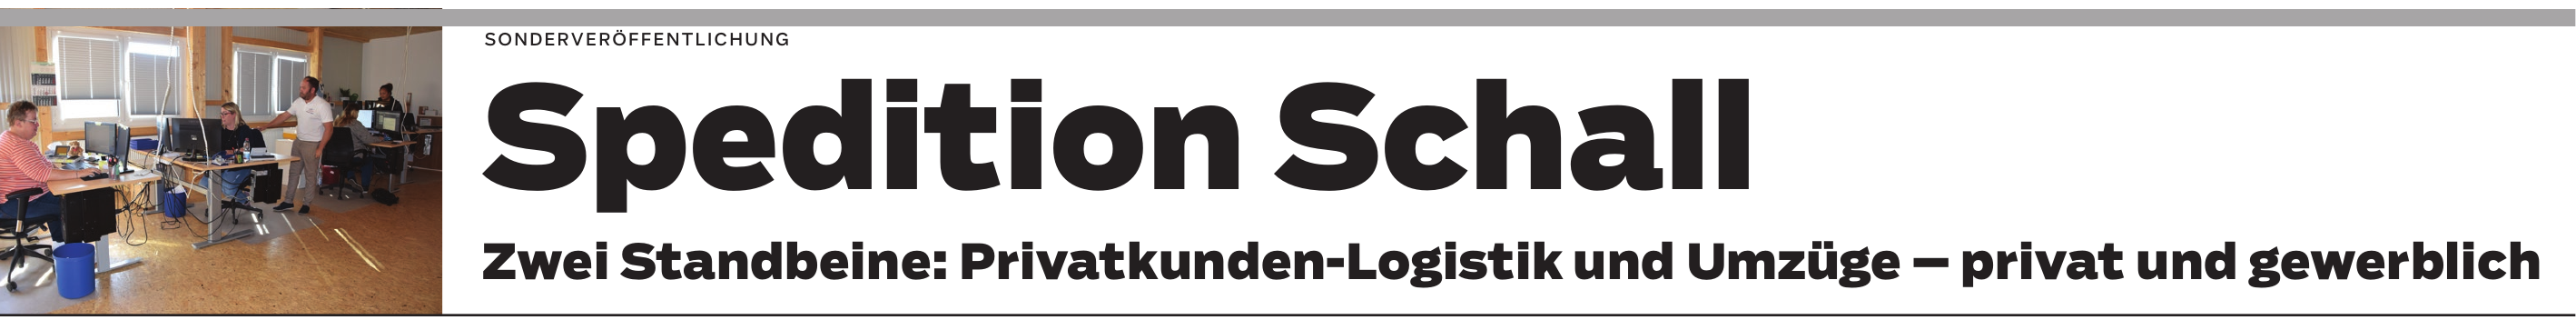 Spedition Schall Neuffen: Viele Pluspunkte für den Logistikstandort Münsingen